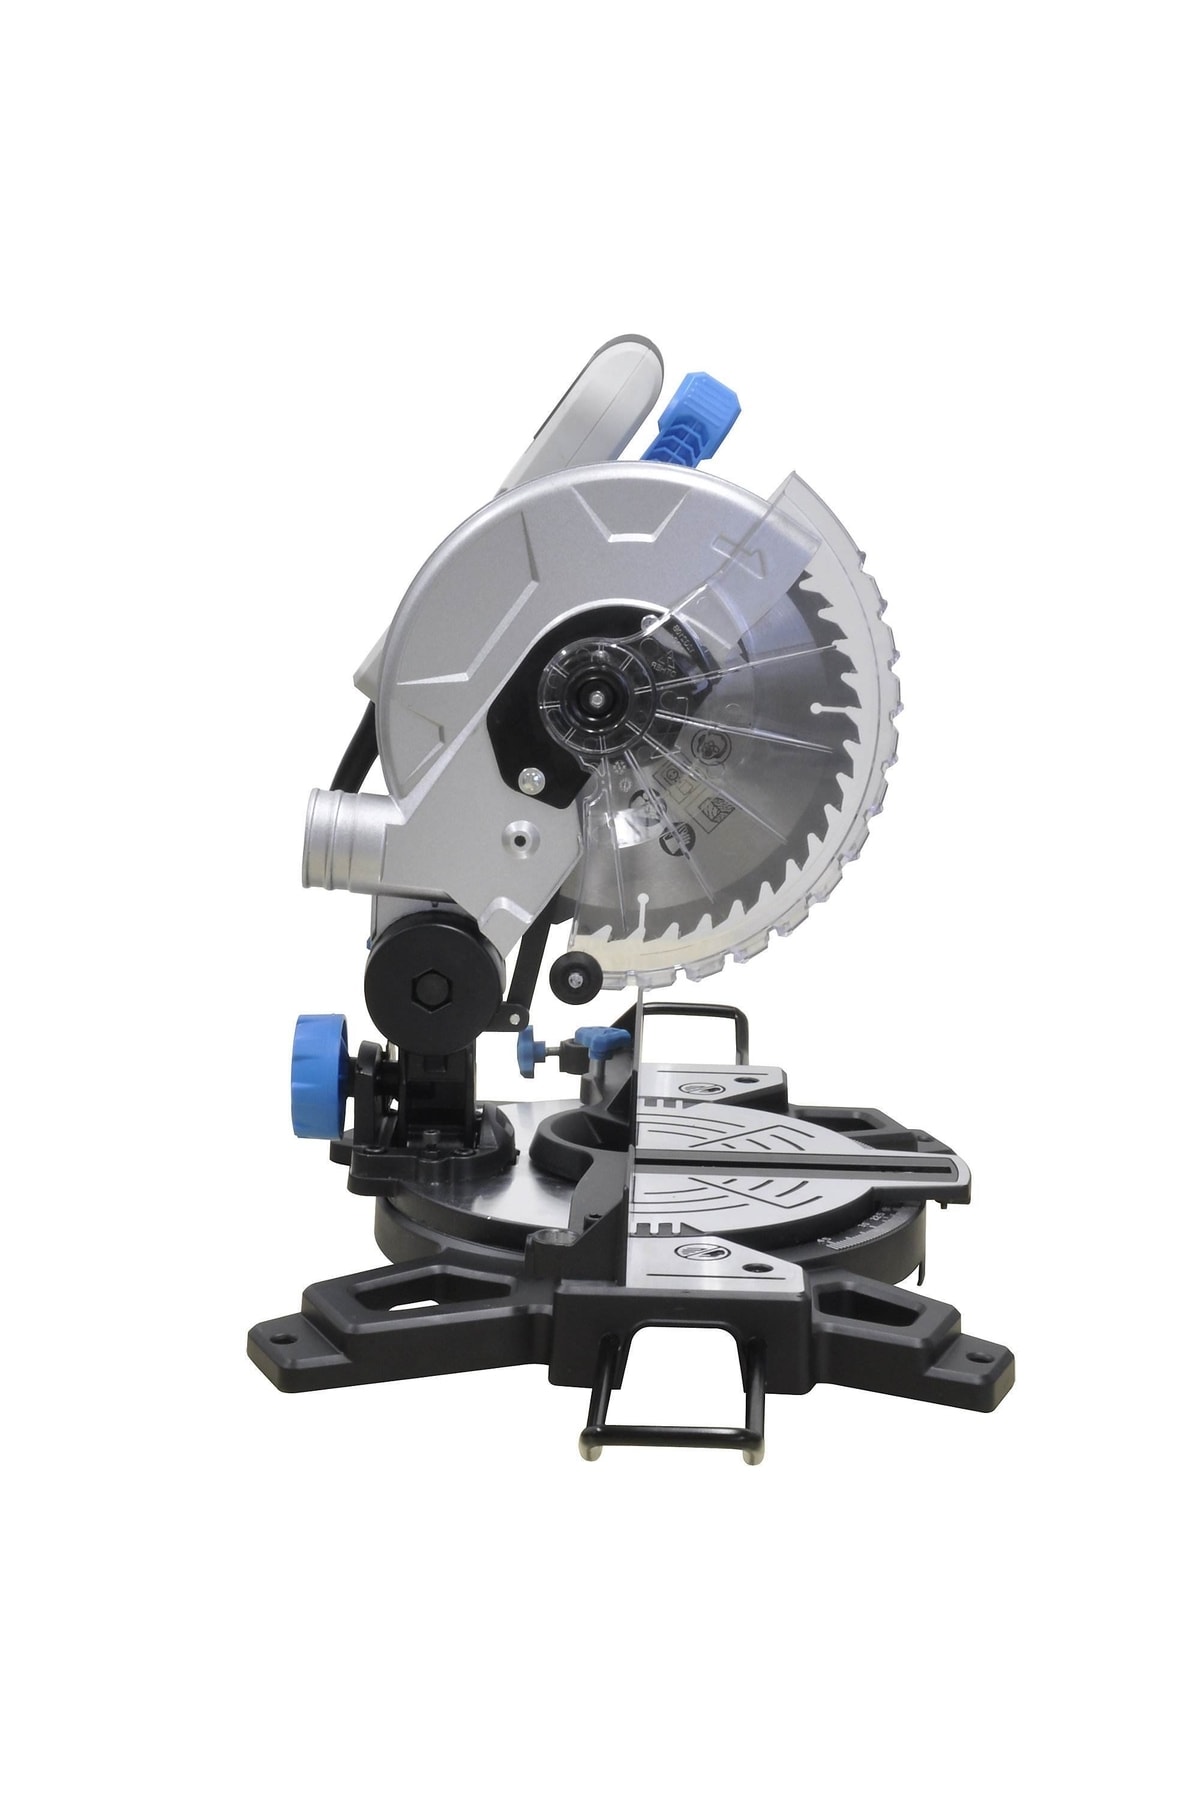 Magnotto Gönye Testere Kesme Makinası 1400 W 210 Mm Gönye Kesim Makinesi Açılı Baş Kesme Ahşap Sunta Parke